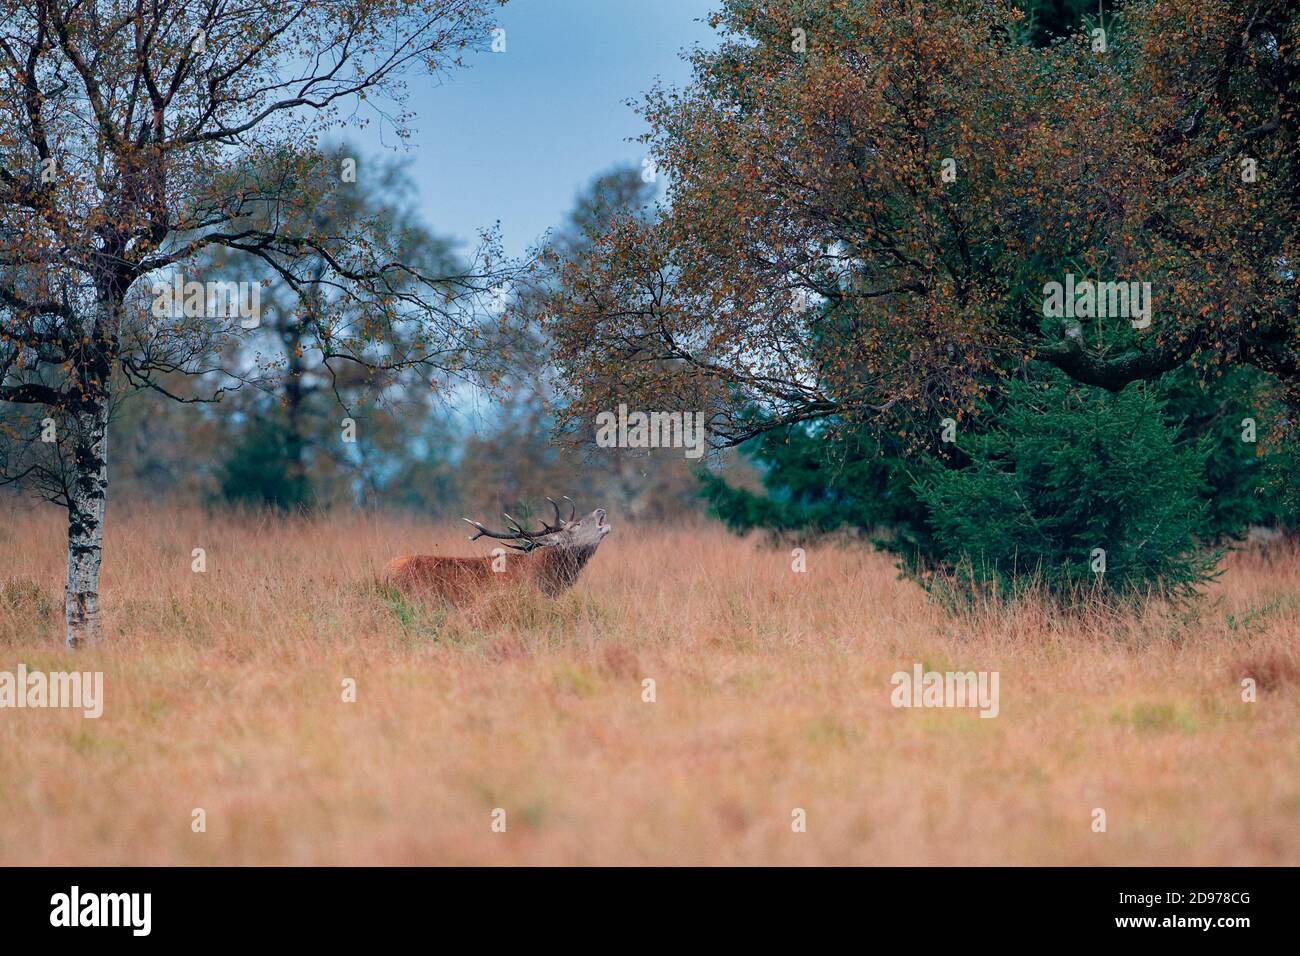 Red Deer (Cervus elaphus) bellowing, Ardennes, Belgium Stock Photo